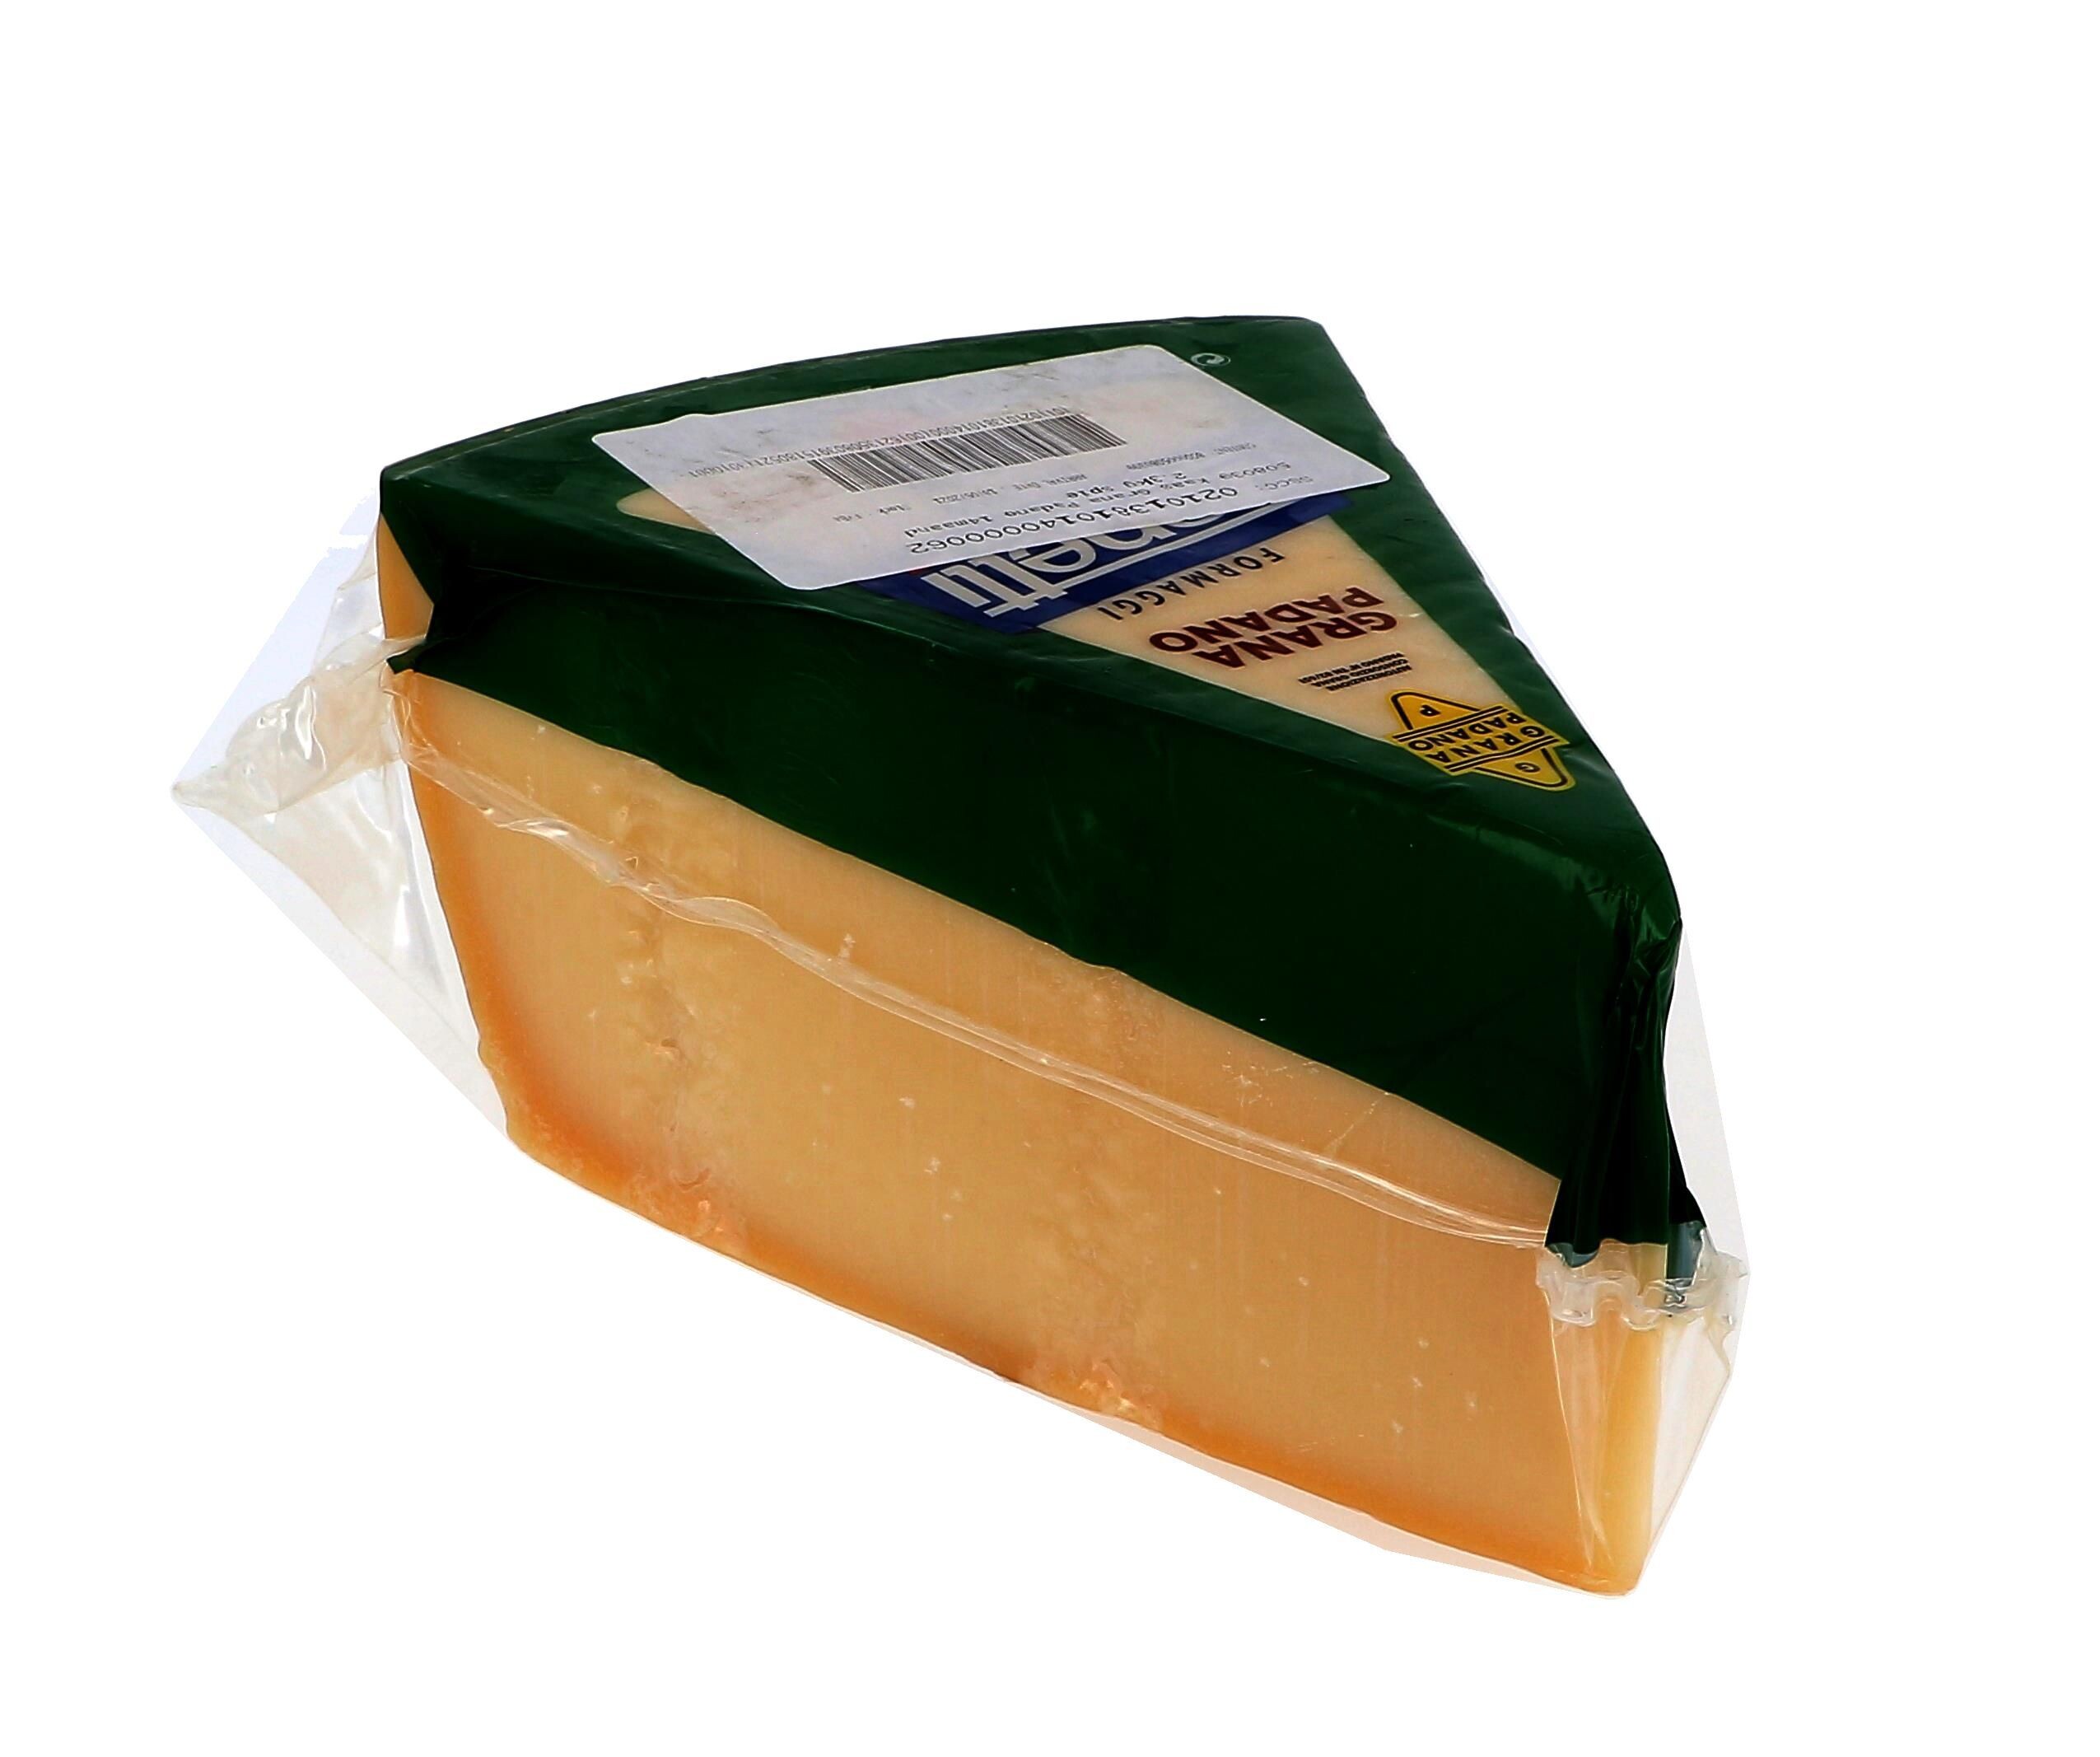 Zanetti Grana Padano Cheese 1/16 wheel 2.3kg block vacuum packed